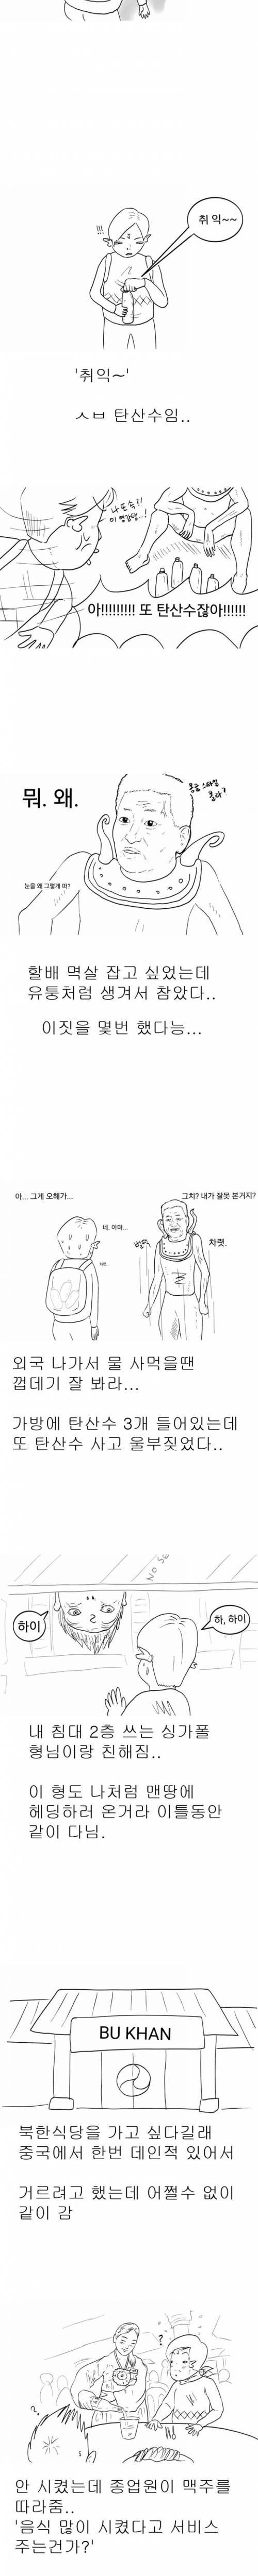 [스압]주갤러의 몽골여행 만화.jpg